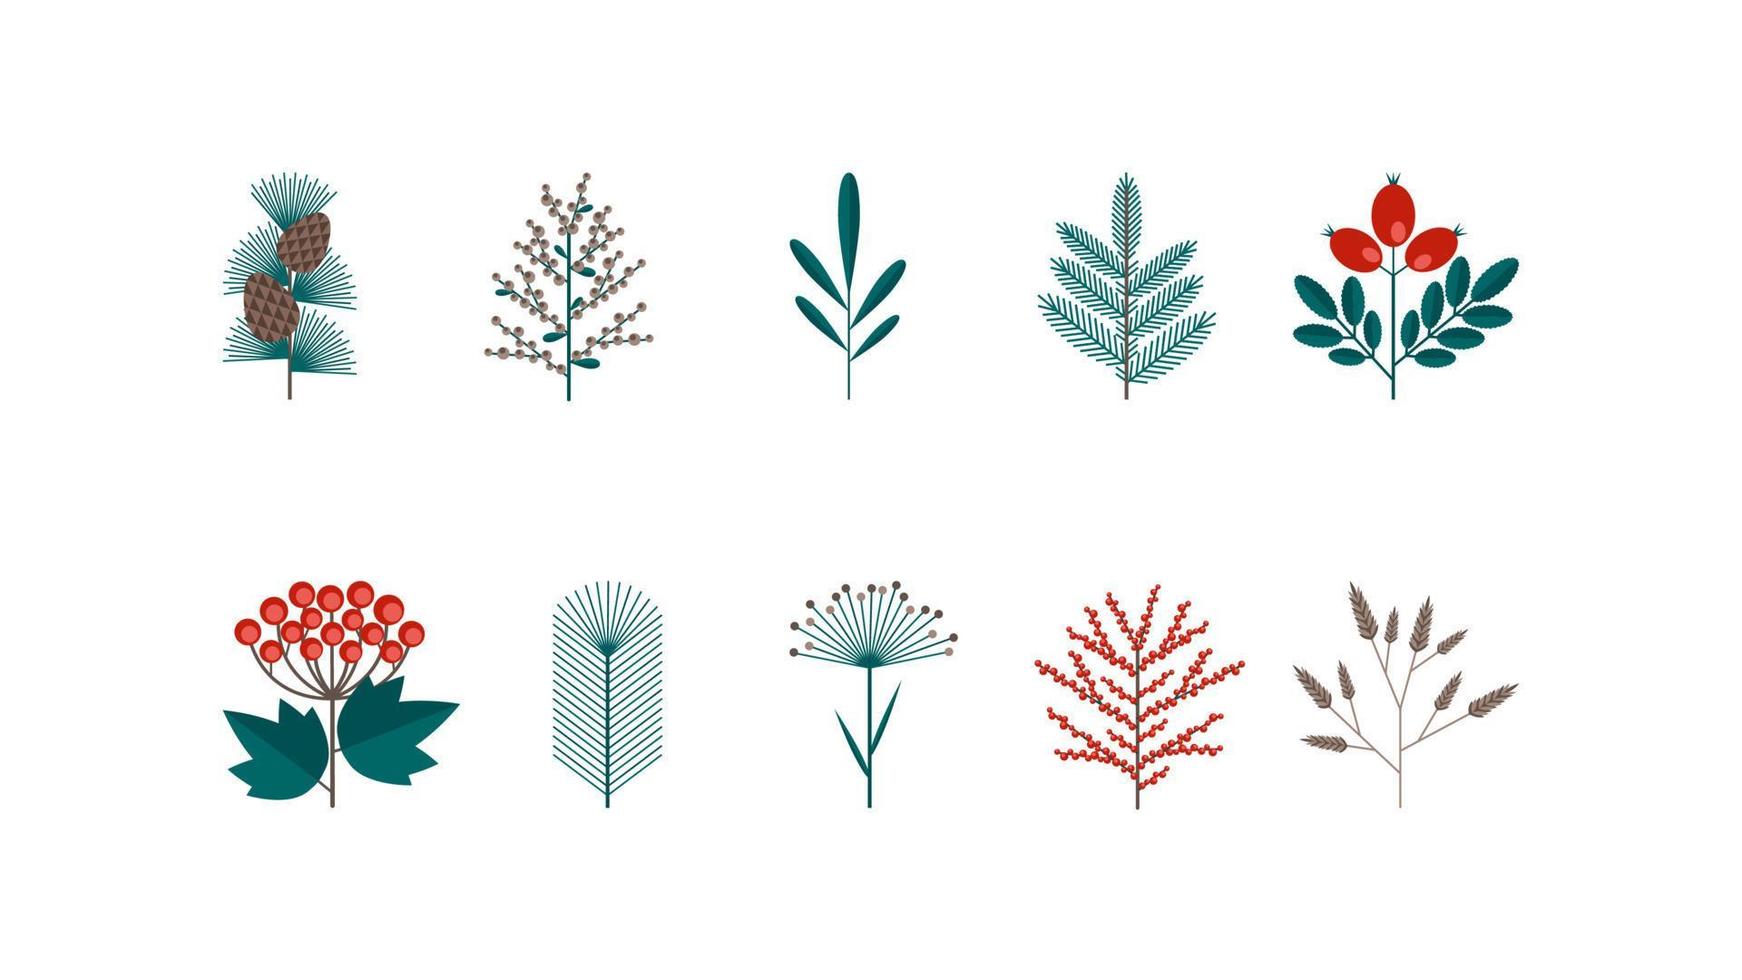 jul vinter- blommig uppsättning i en platt retro stil. bär, blad, blomma för skapande vykort, banderoller och mönster. vektor illustration isolerat på en vit bakgrund.